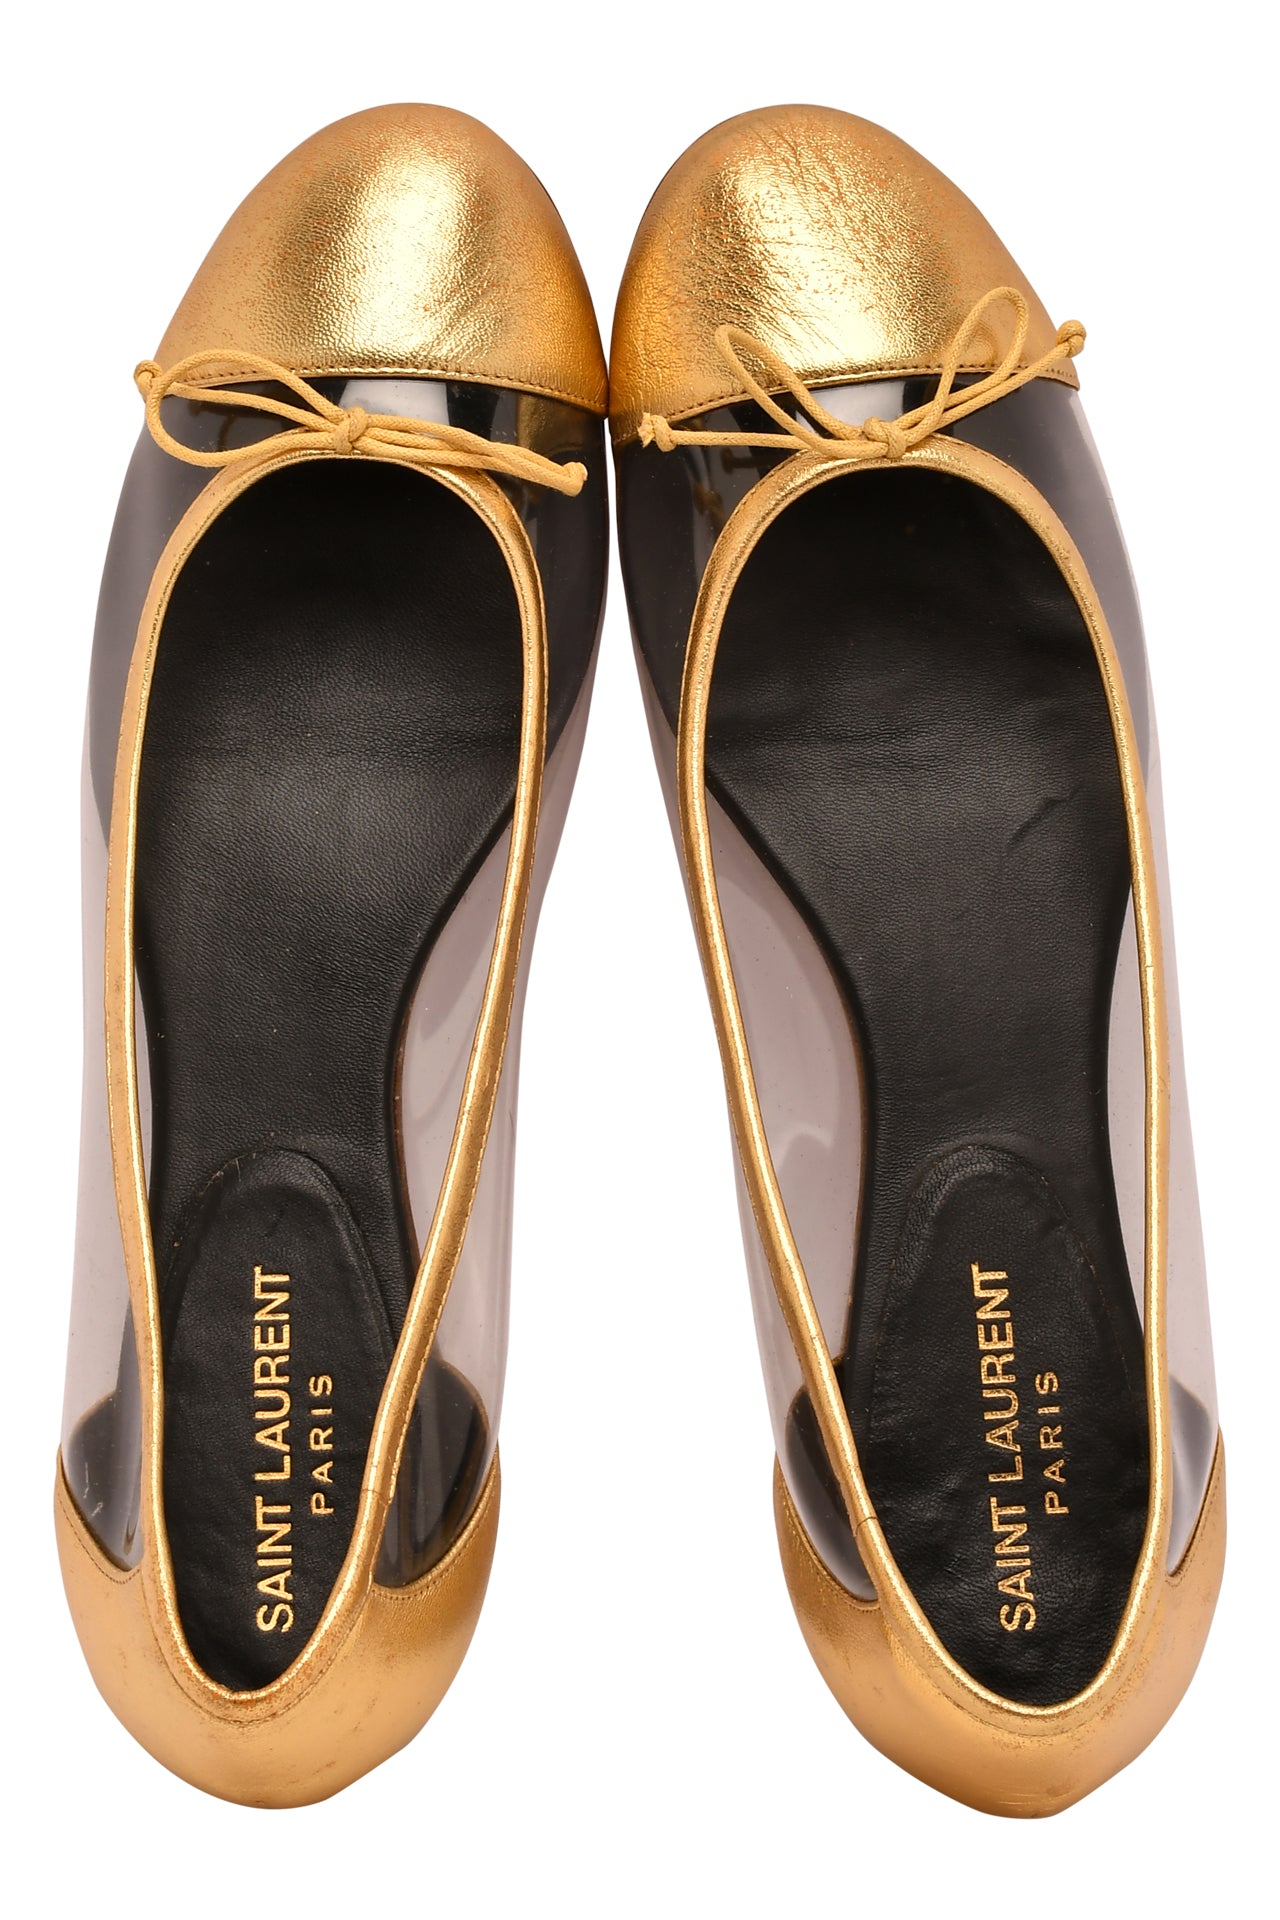 Saint Laurent Gold Leather And PVC Ballet Flats EU 39